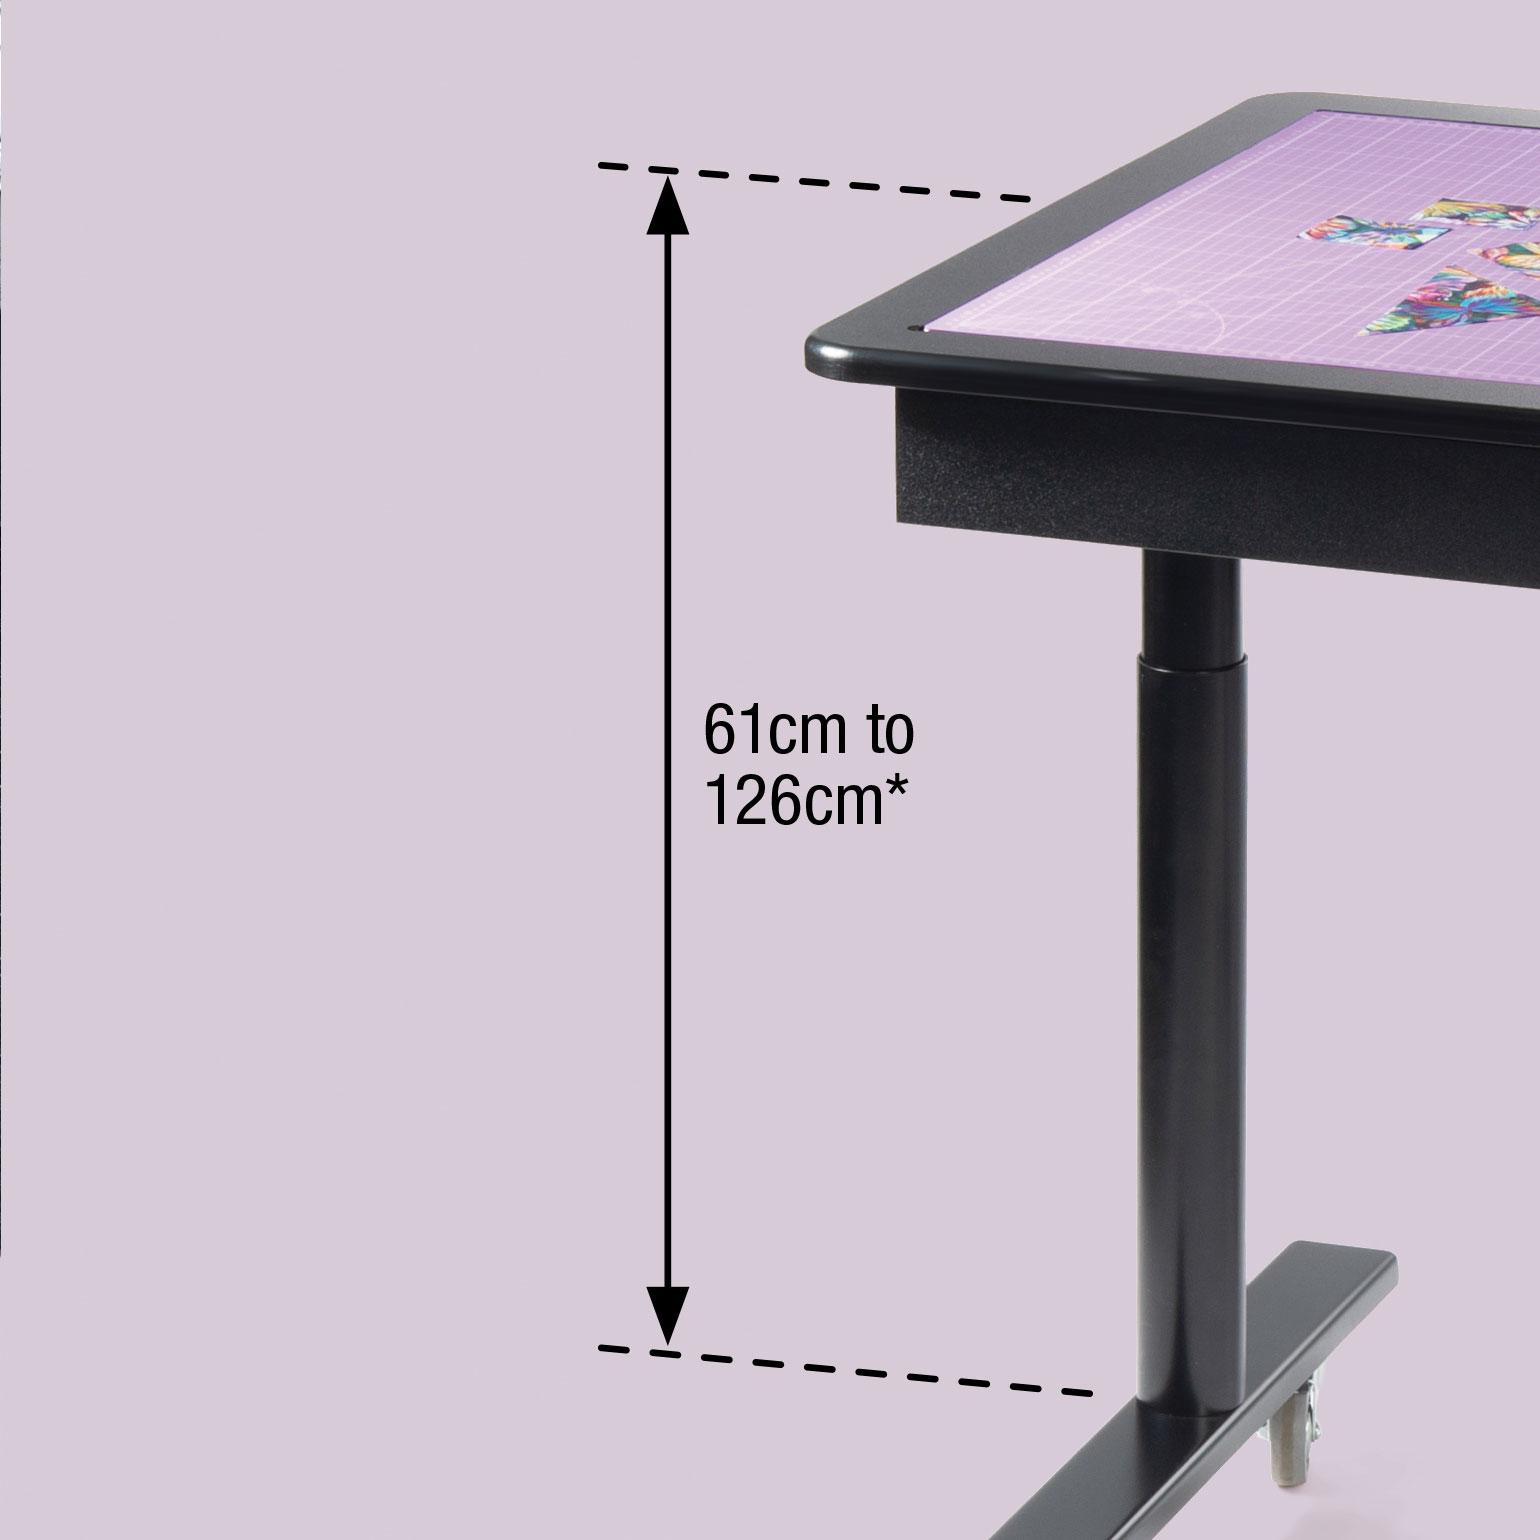 Creative Station – Adjustable Multi-Purpose Table